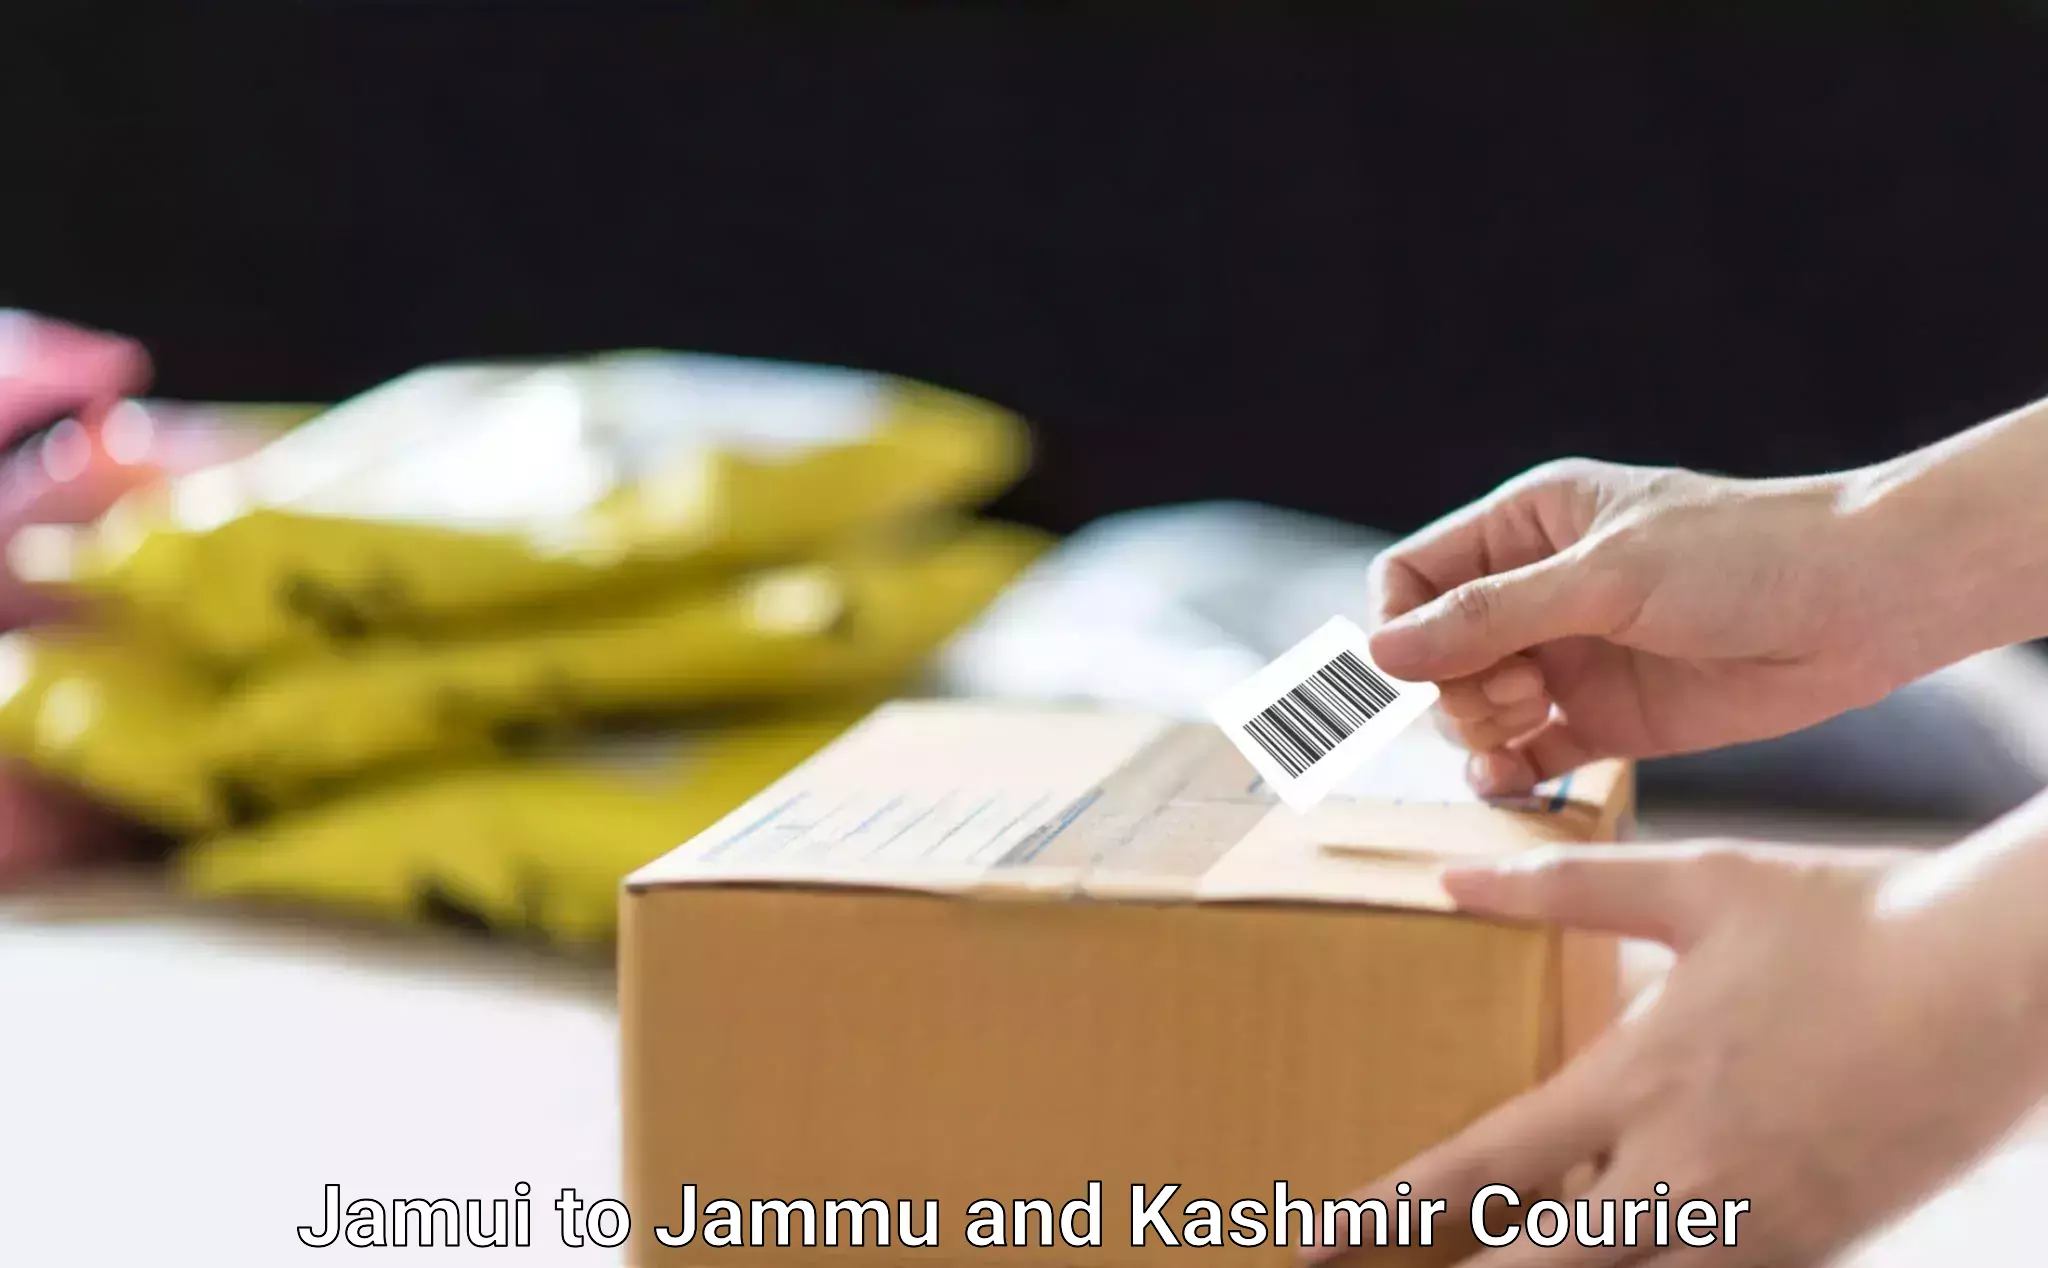 Stress-free moving Jamui to University of Jammu